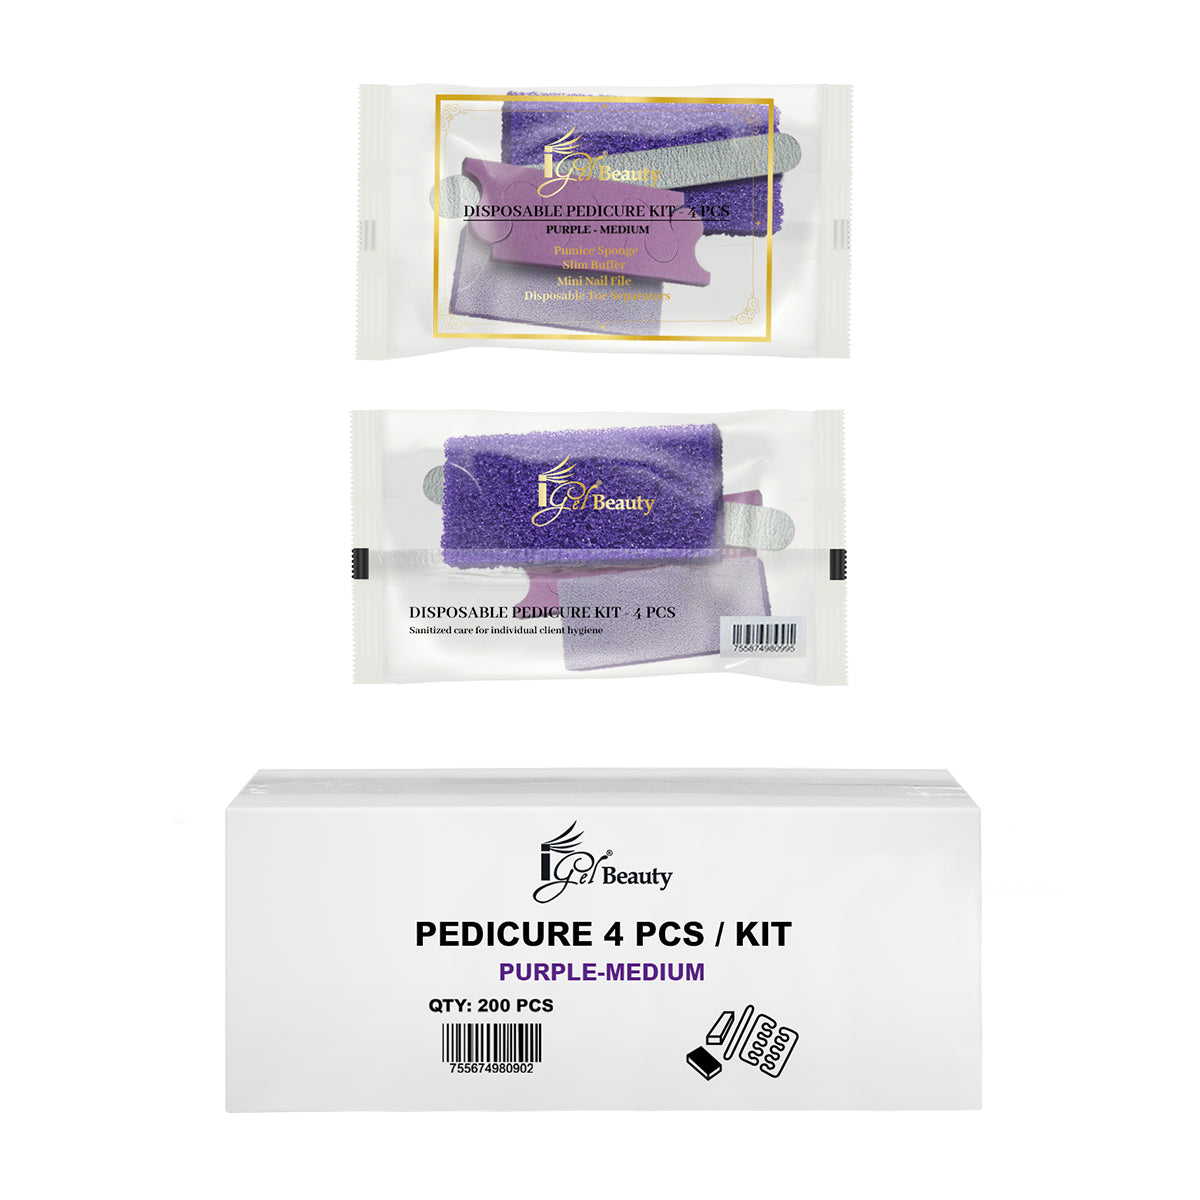 Pedi Pack, foot care kit (9 in 1 Professional Pedicure Kit, Foot Care